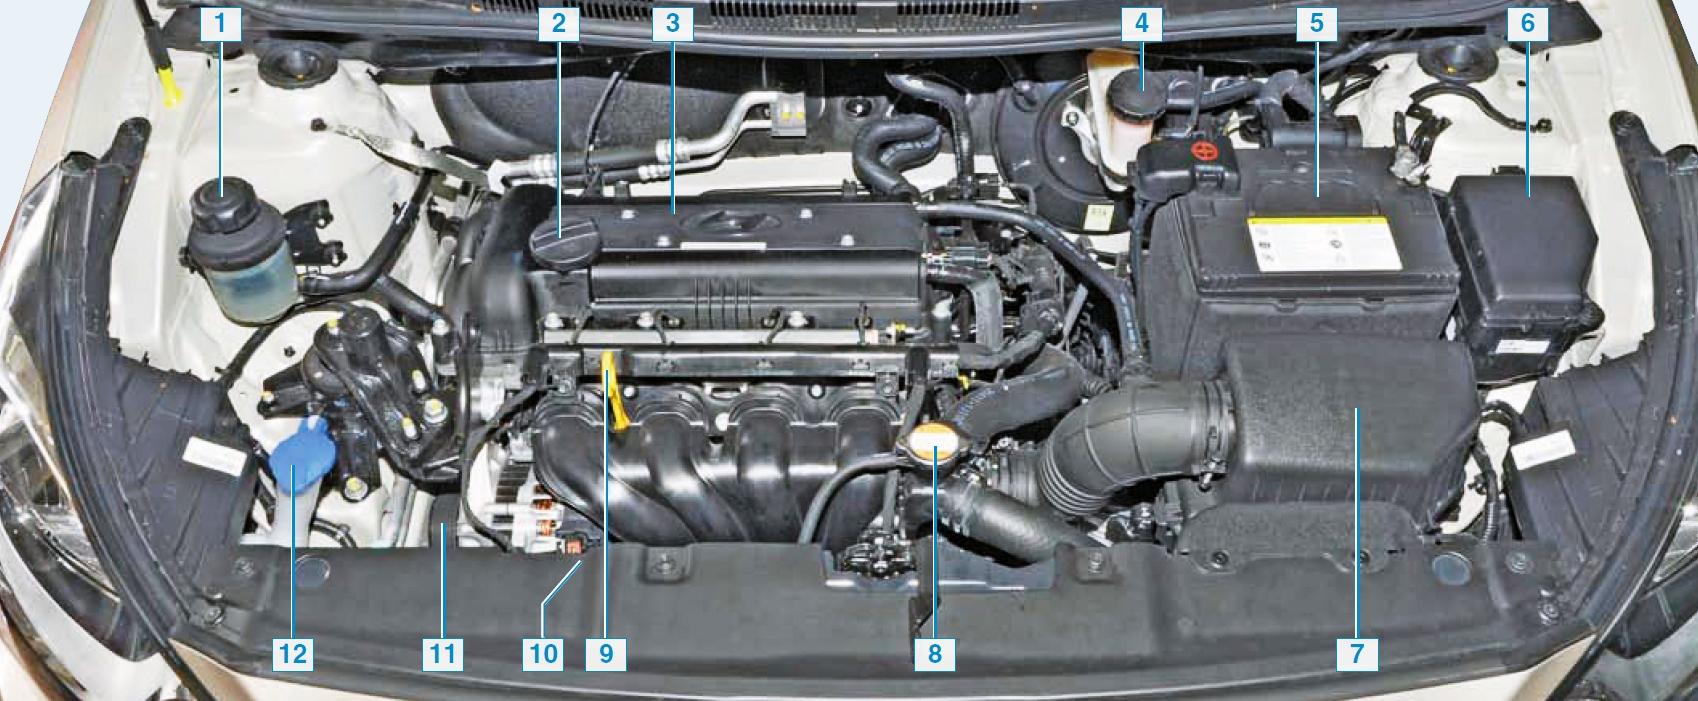 Расположение узлов и агрегатов в подкапотном пространстве на автомобиле Hyundai Solaris